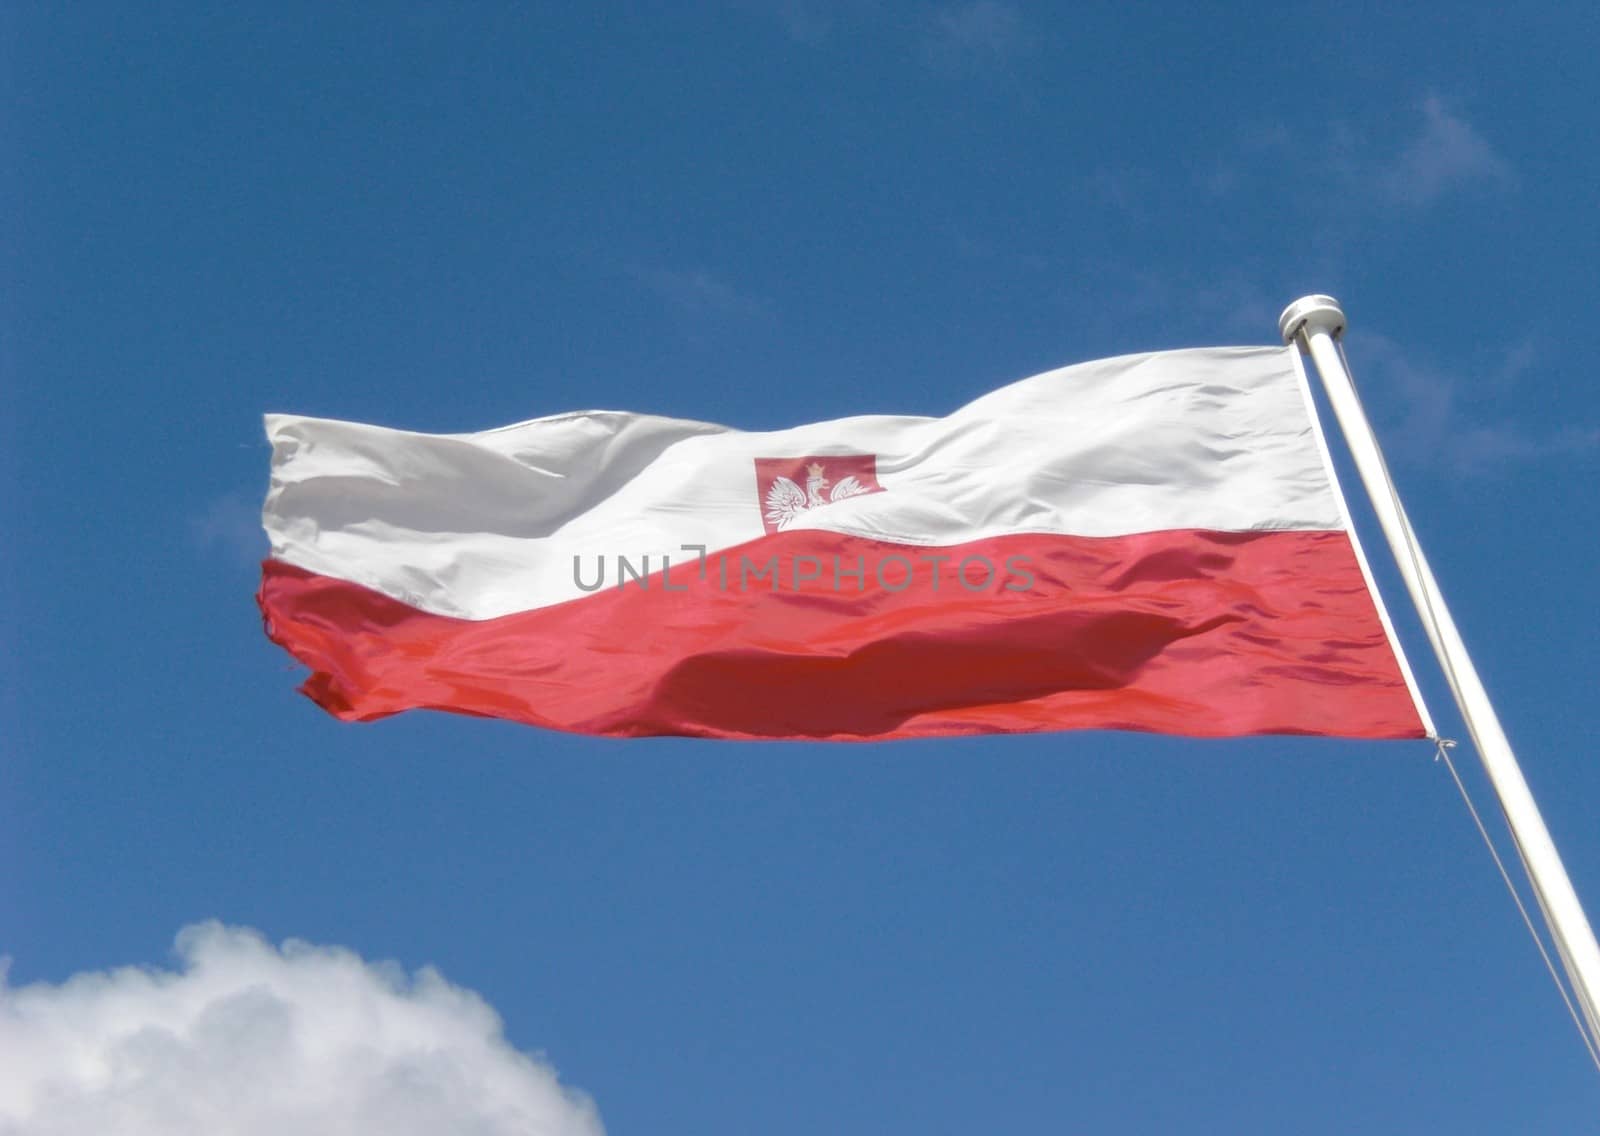 Poland flag with white eagle emblem on white flagstaff